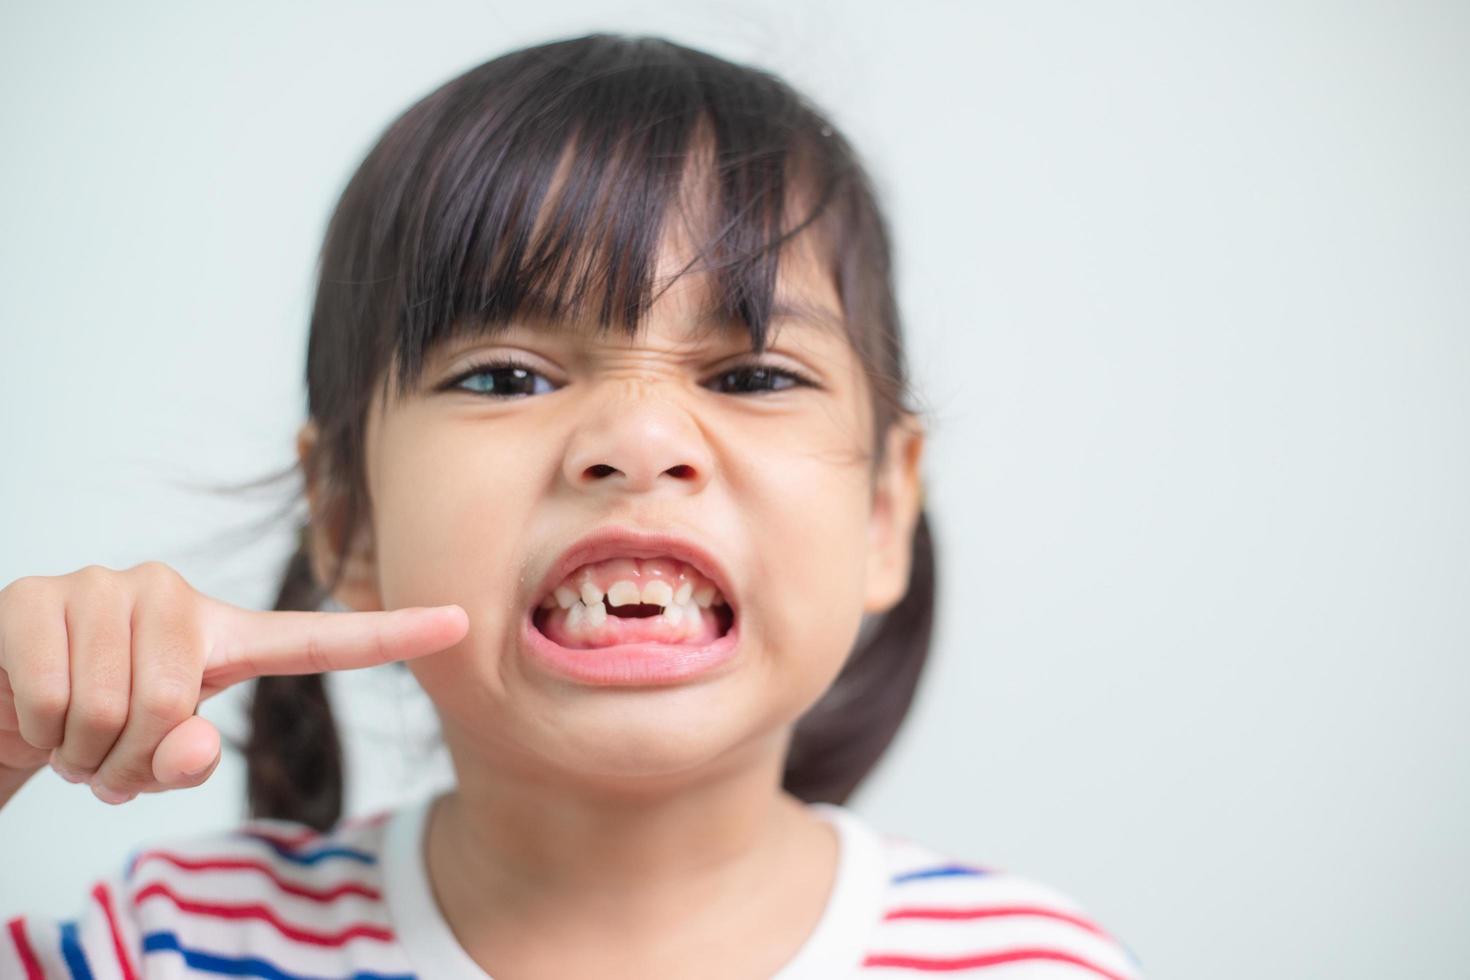 little Asian girl showing her broken milk teeth. photo